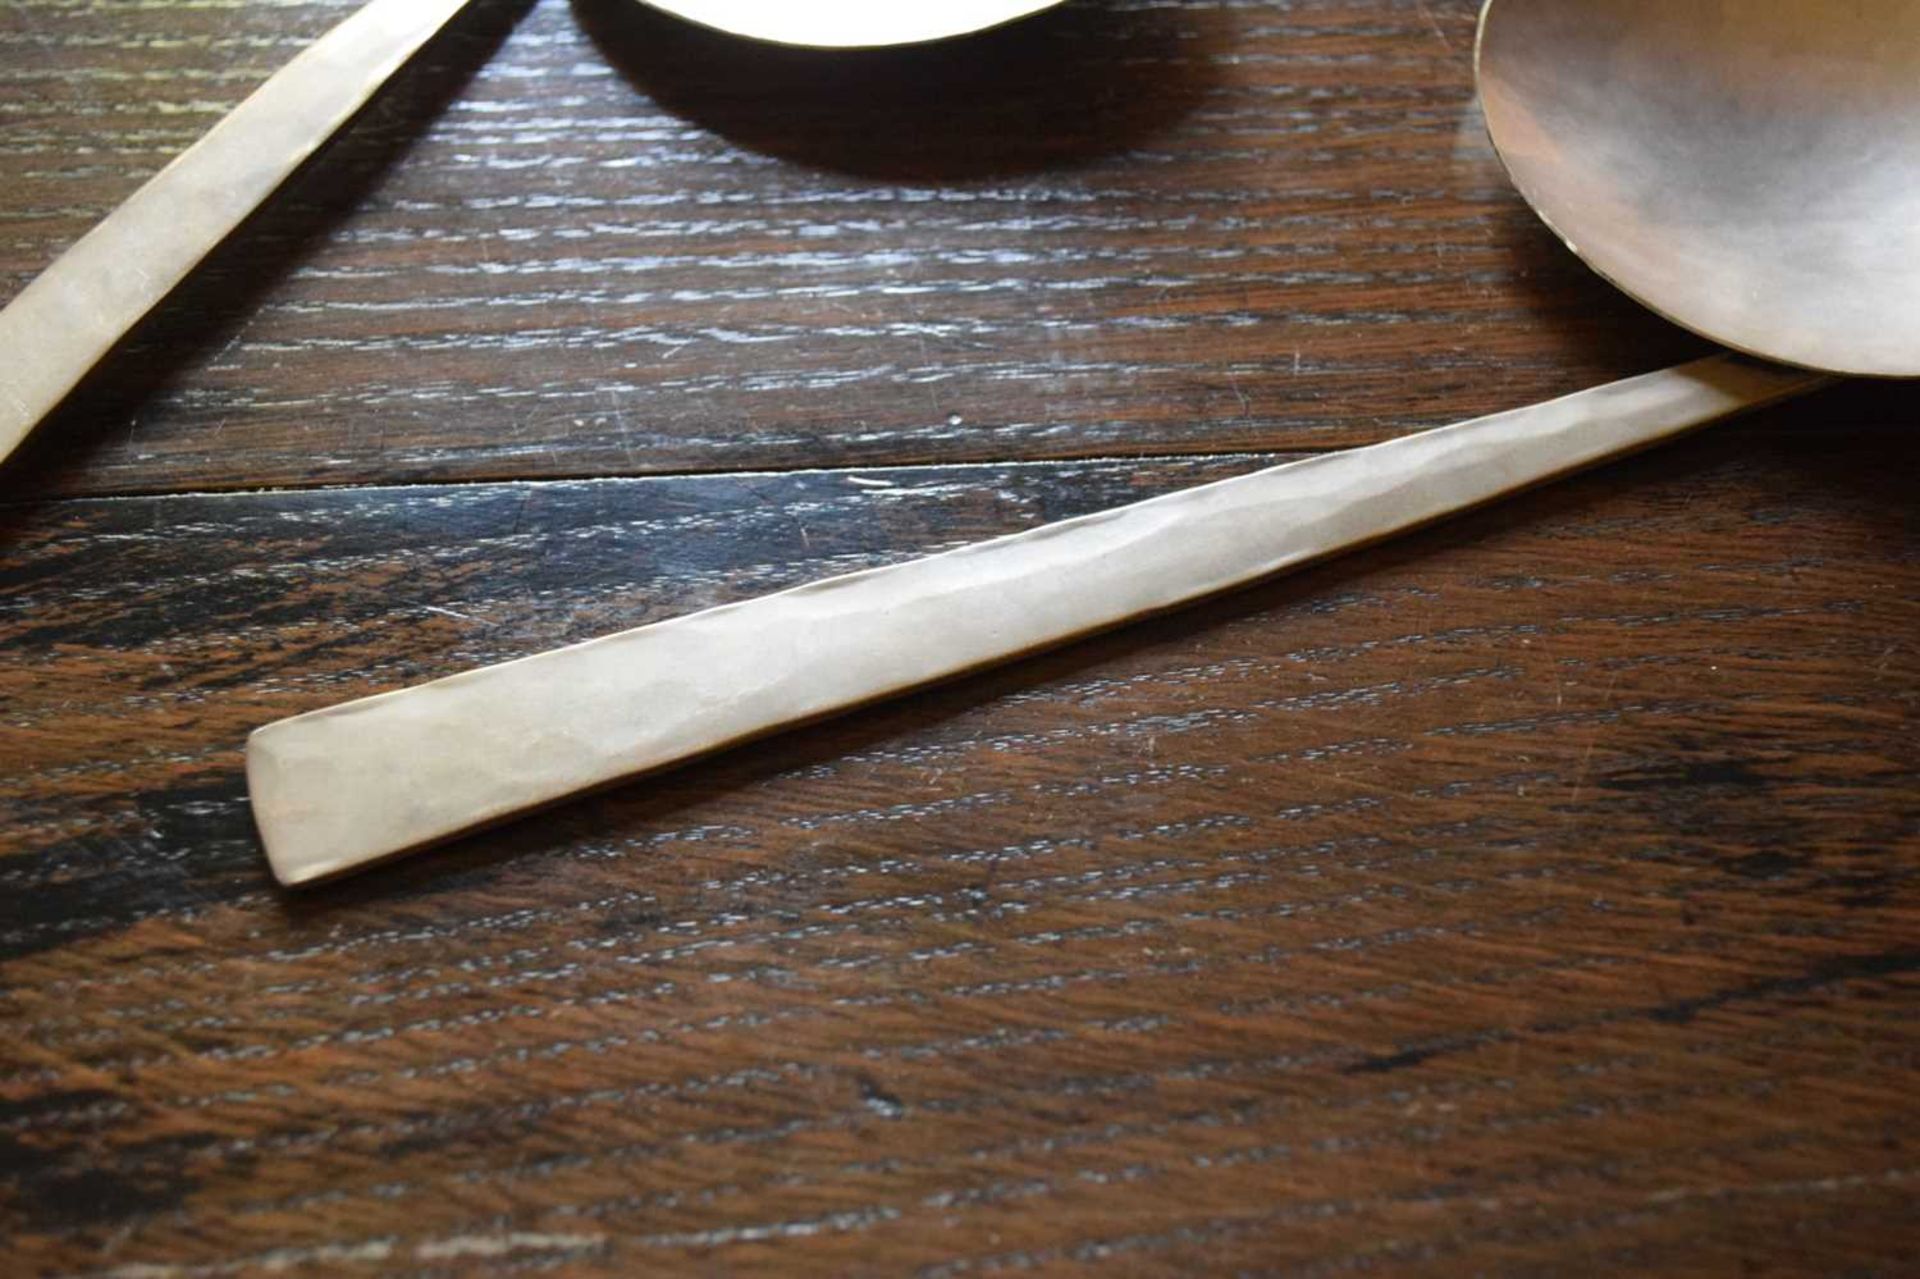 Pair of Elizabeth II Modernist silver spoons by Philippa Jane Merriman - Image 4 of 8